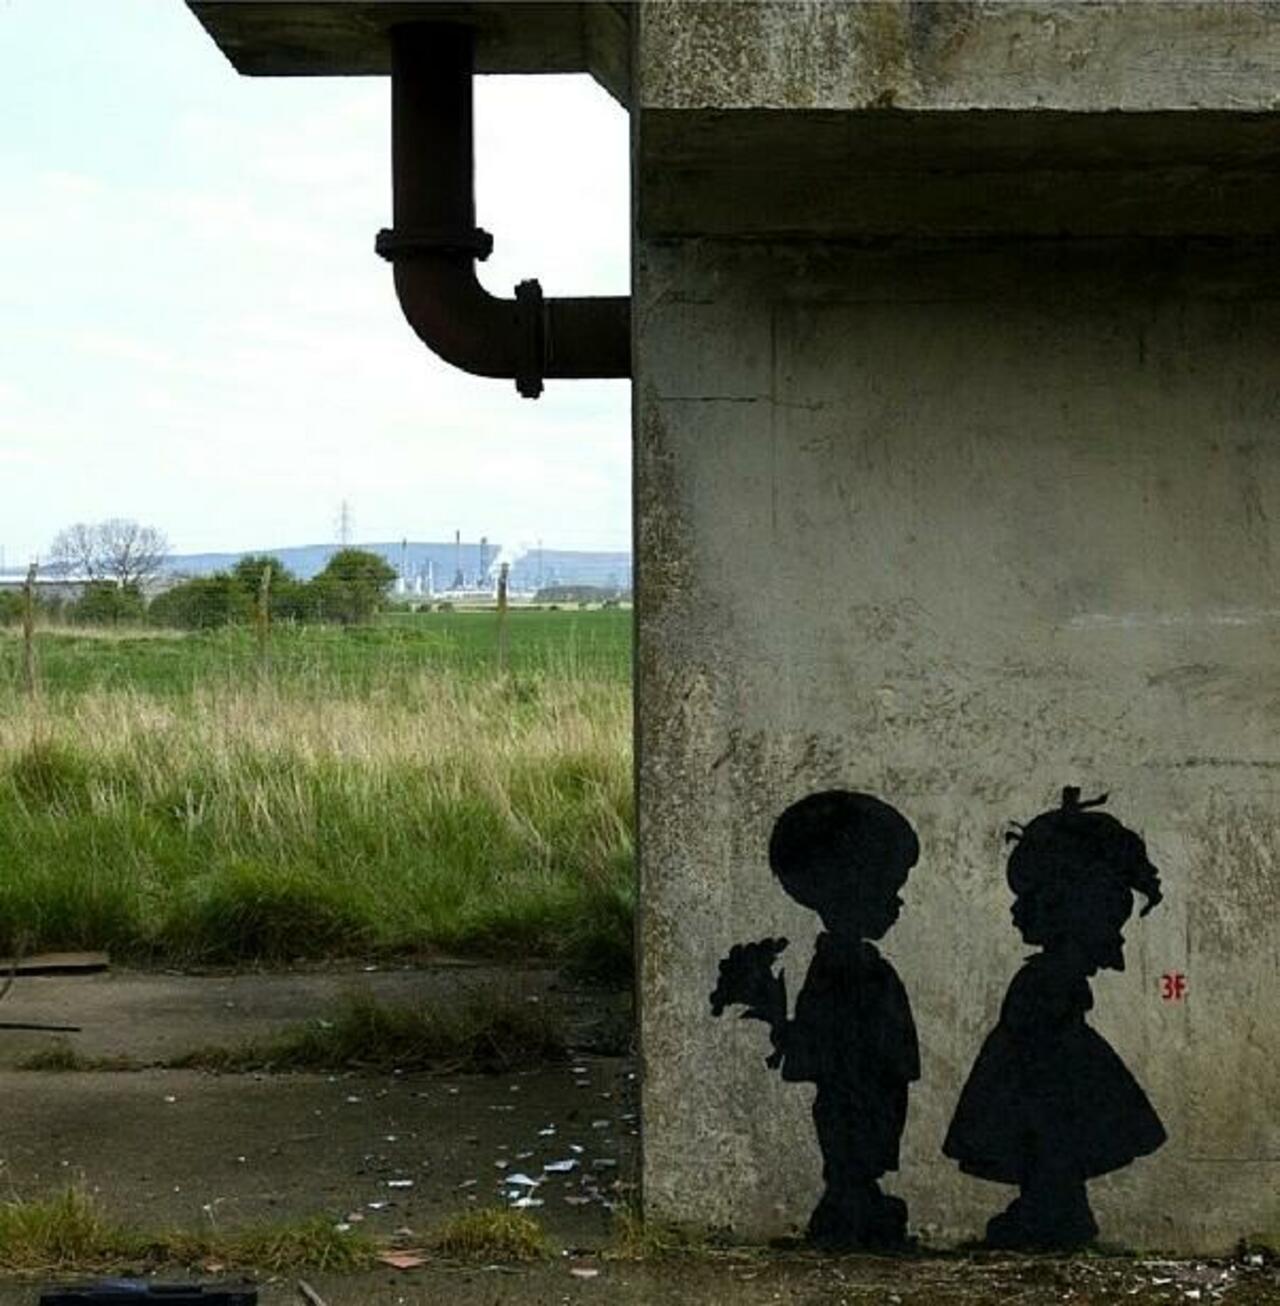 Found love in a hopeless place!

Street Art by 3fountains 

#art #mural #graffiti #streetart http://t.co/6BQWSRunK2